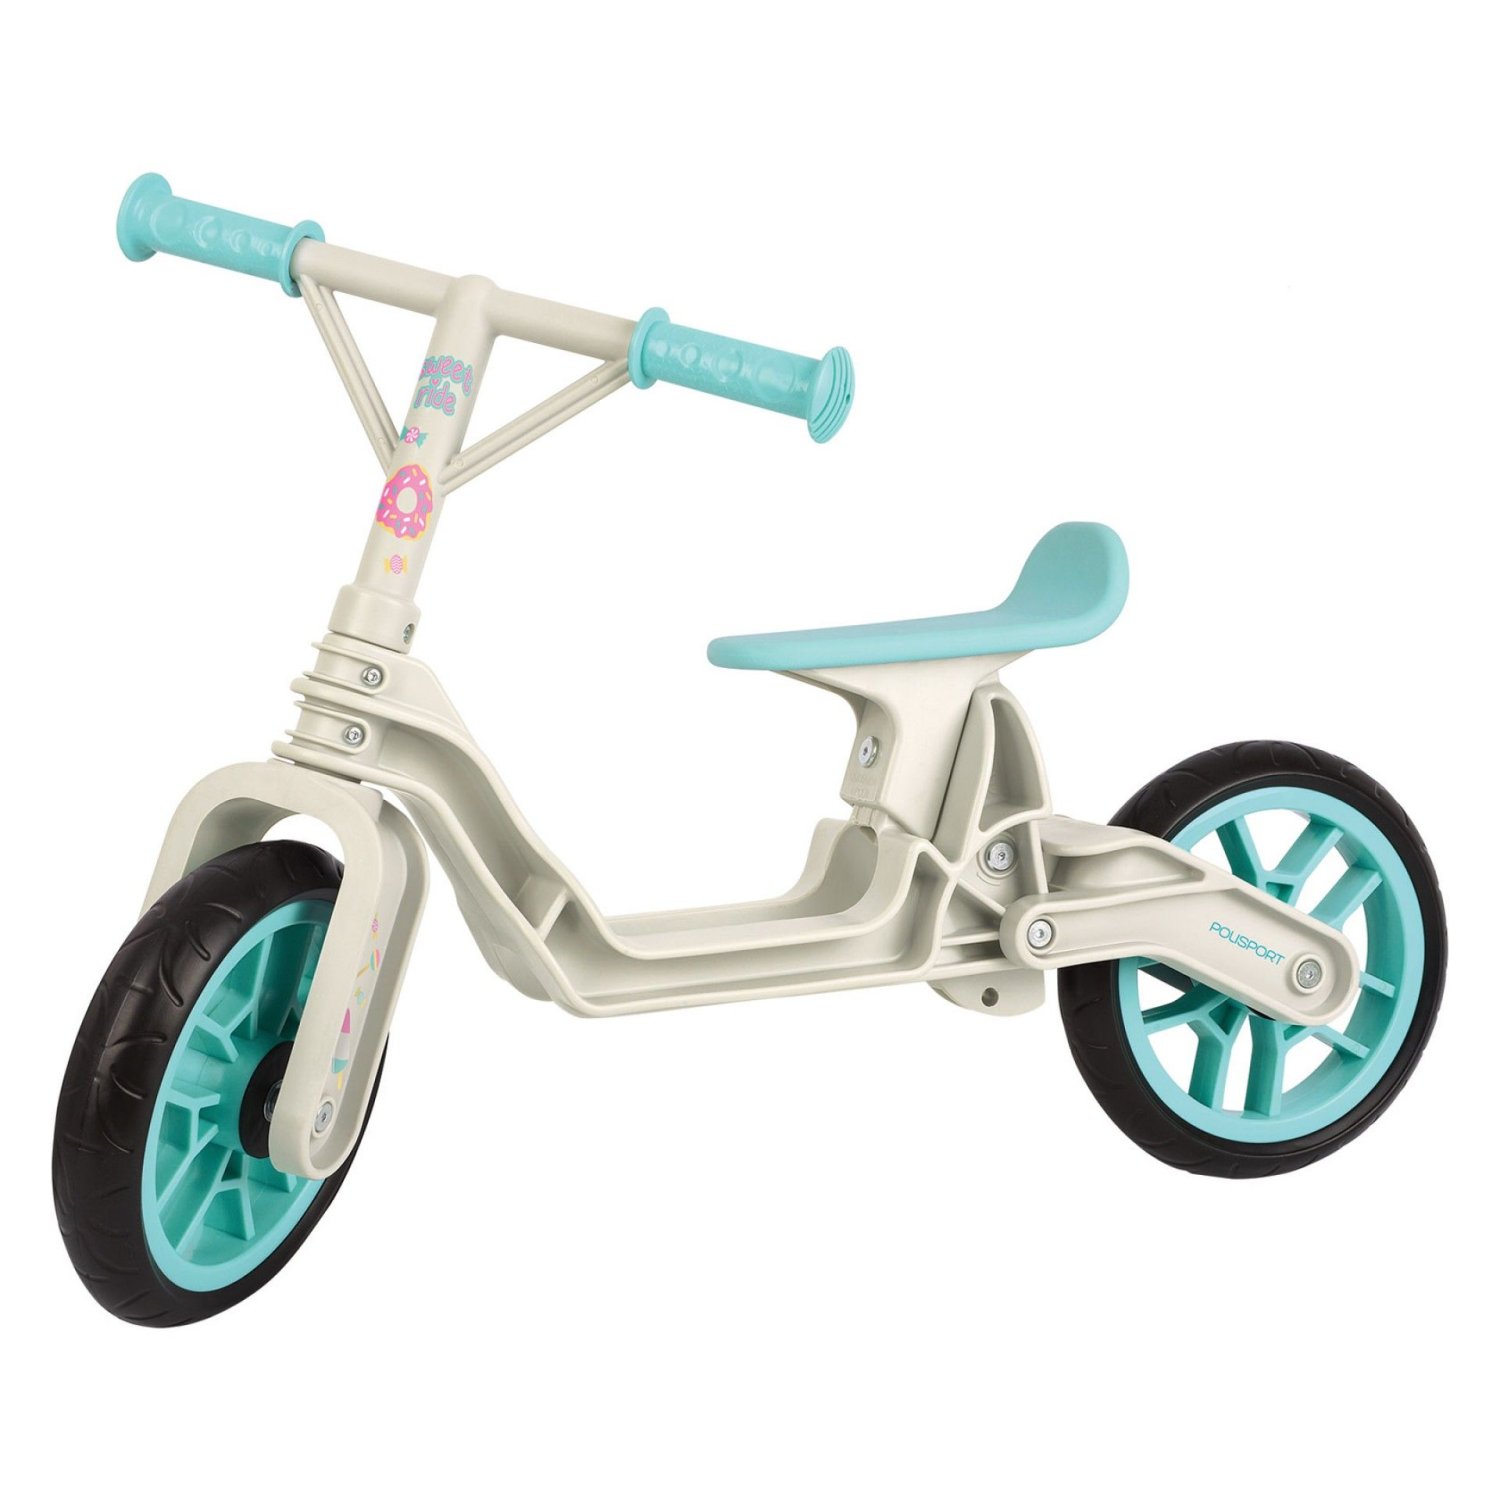 Детский беговел Polisport Balance bike, cream/mint, 2021 ручка управляющая для детского велосипеда peruzzo balance angel npe00975